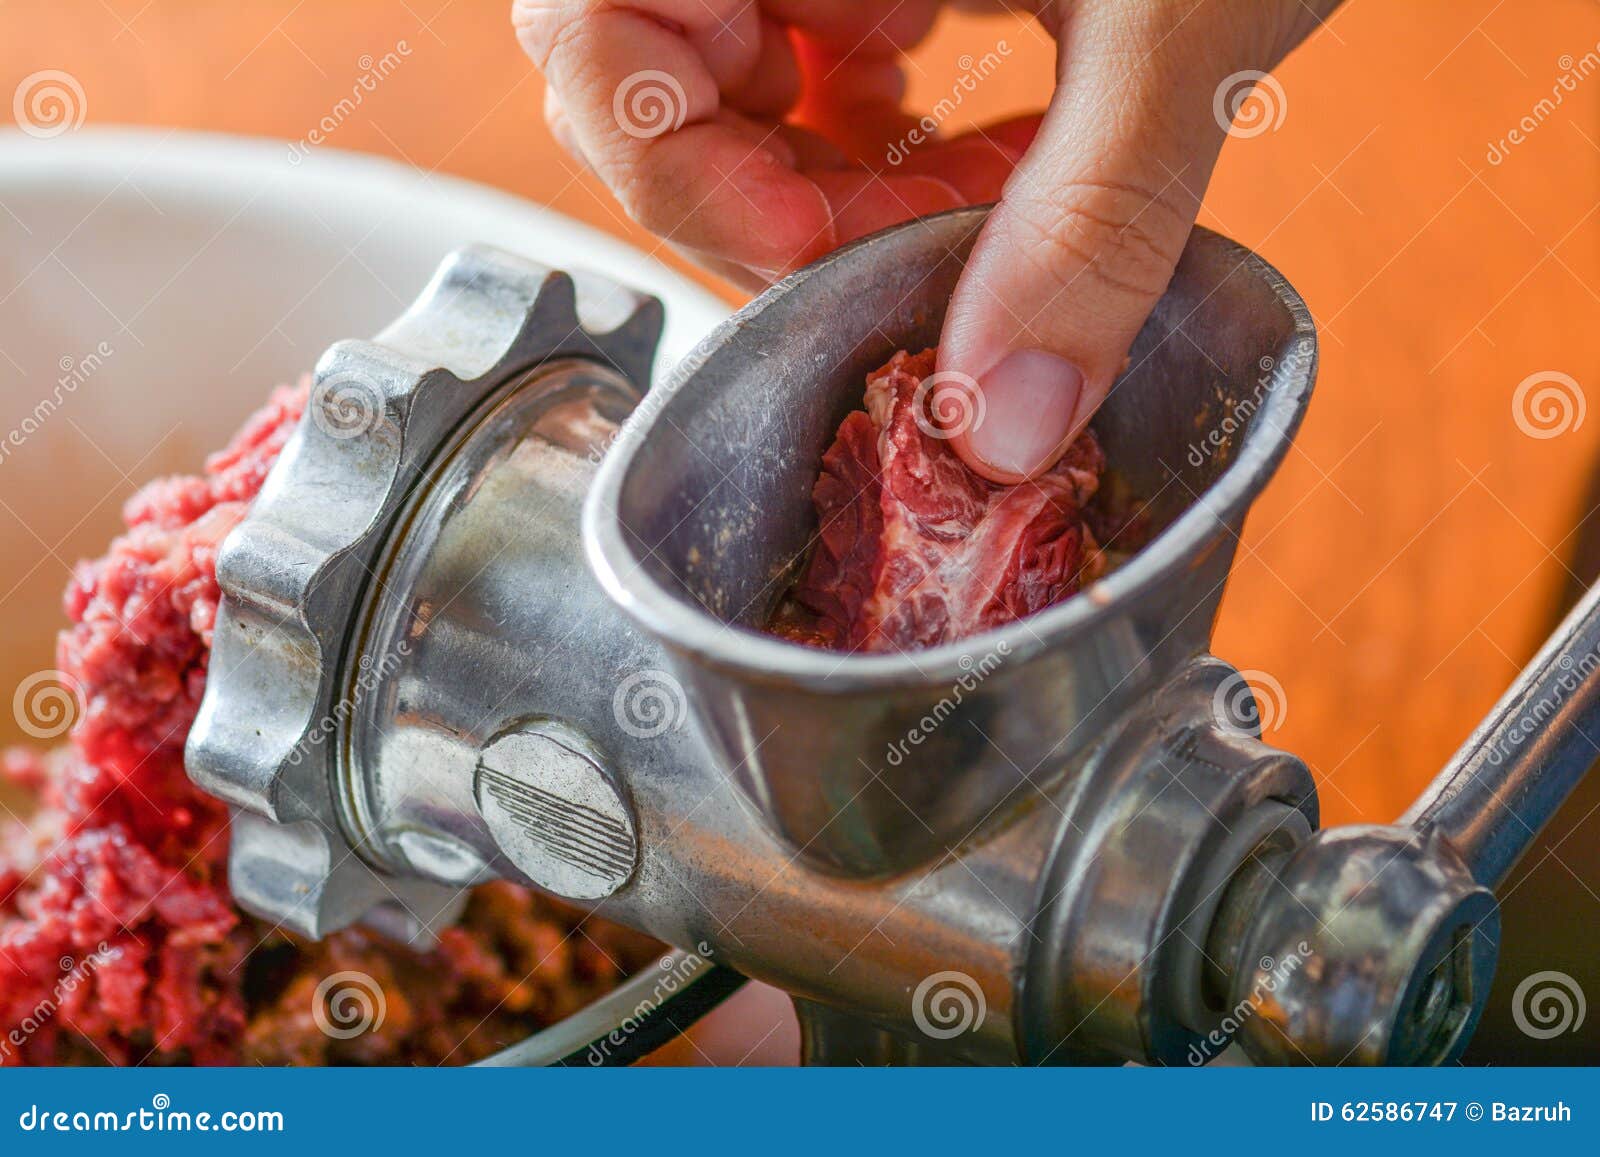 https://thumbs.dreamstime.com/z/grinding-meat-old-meat-grinder-vintage-metal-meatgrinder-62586747.jpg